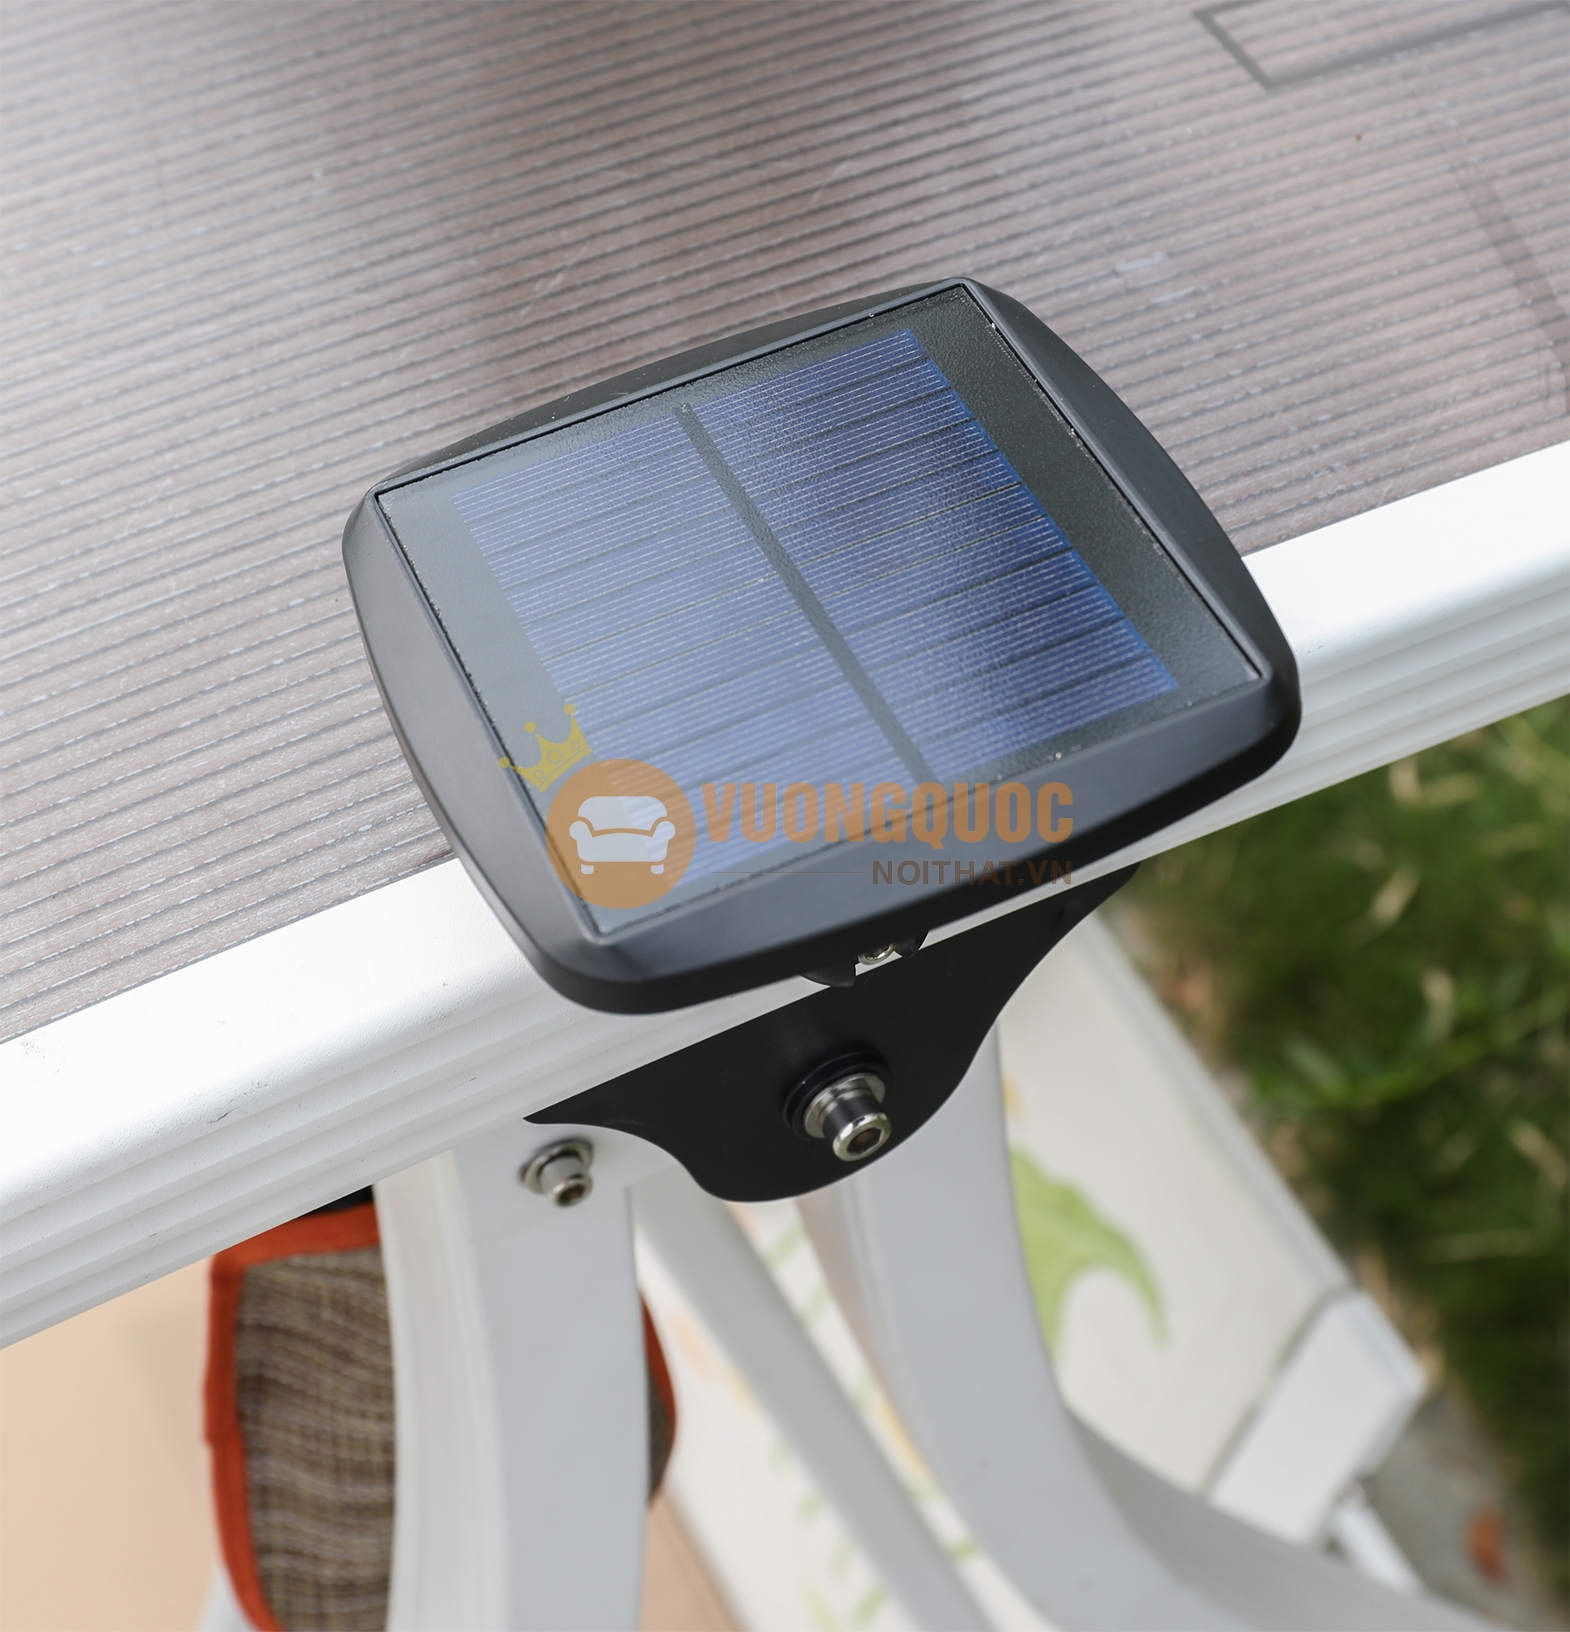 Xích đu kiểu dáng hiện đại bằng nhôm đúc ZXFM106 có tấm pin năng lượng mặt trời